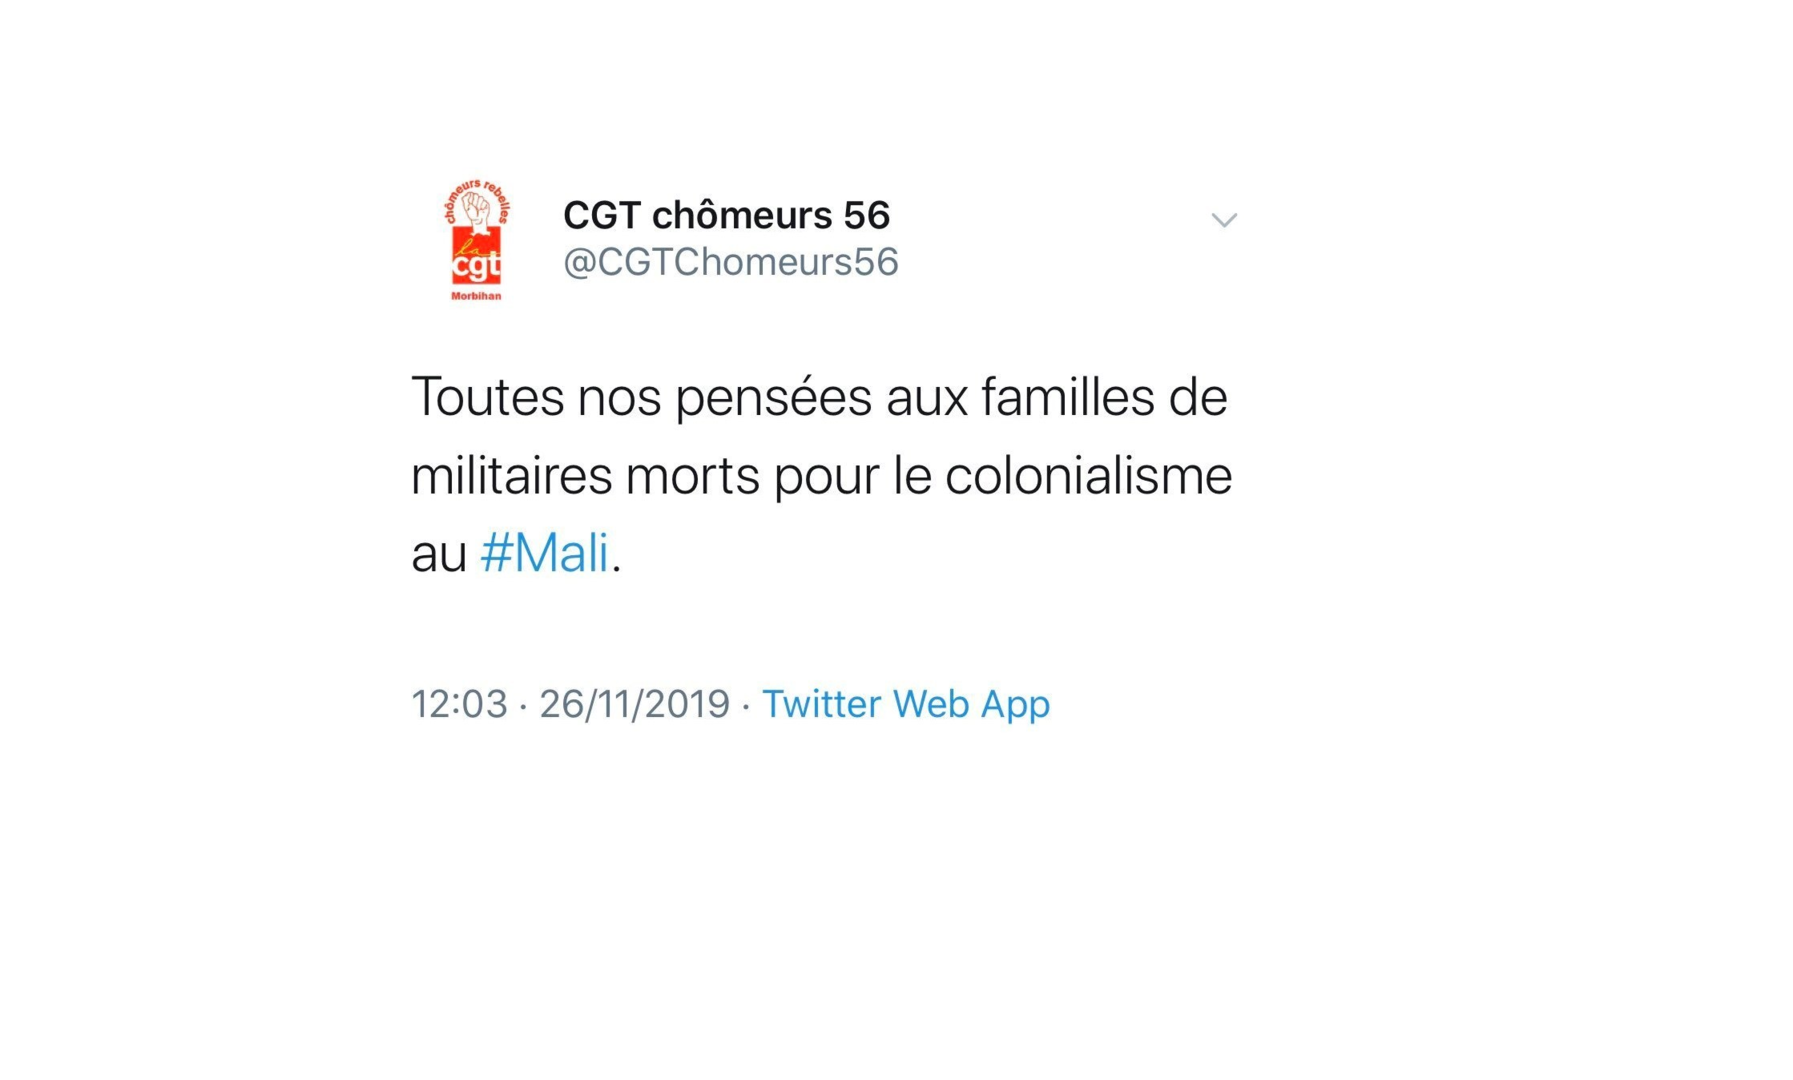 Soldats morts au Mali : un compte Twitter de la CGT fait polémique en parlant de «colonialisme»